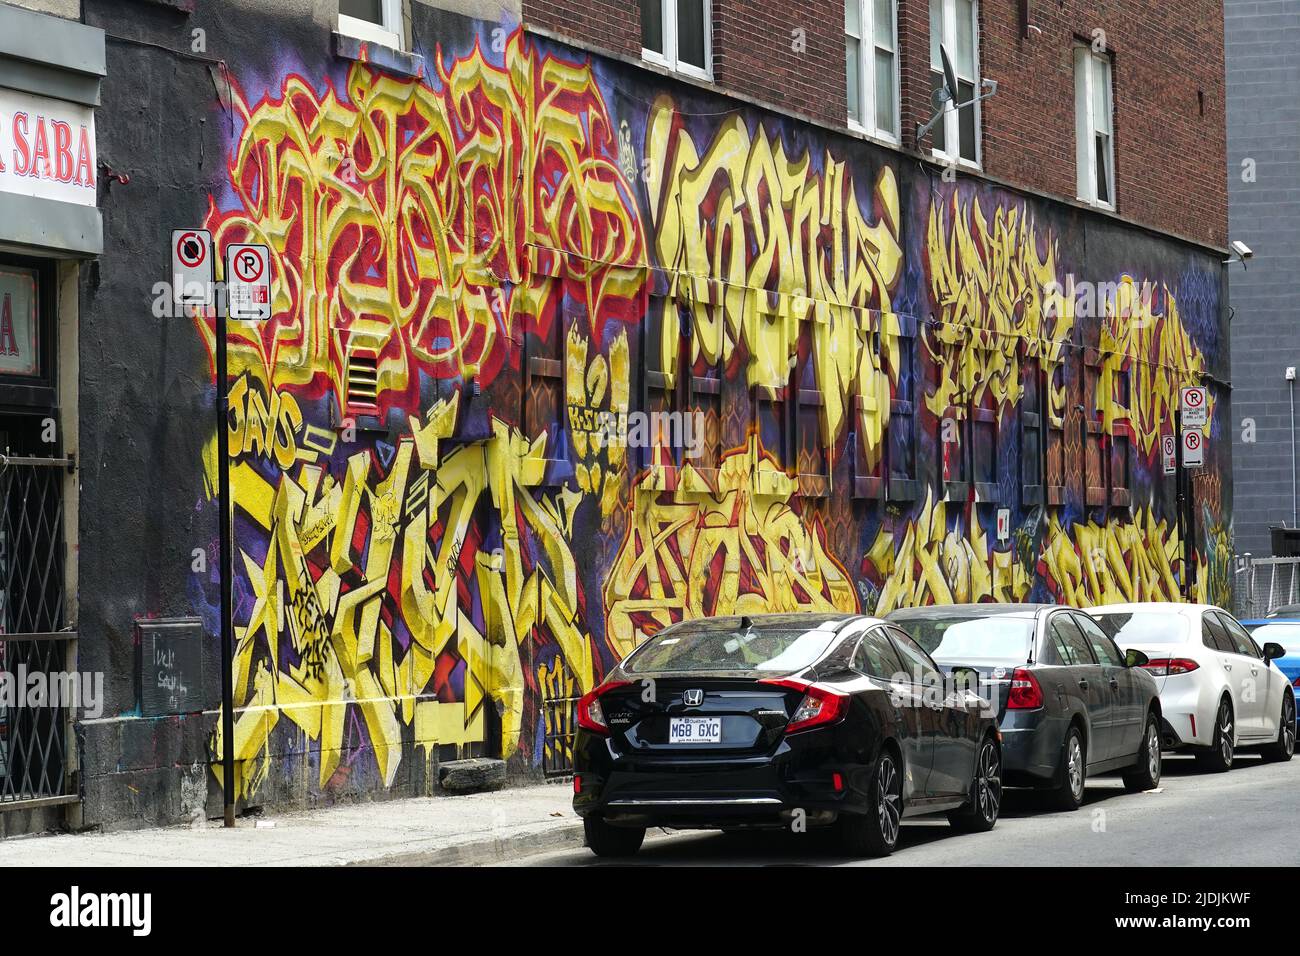 graffiti, Montreal, Quebec province, Canada, North America Stock Photo